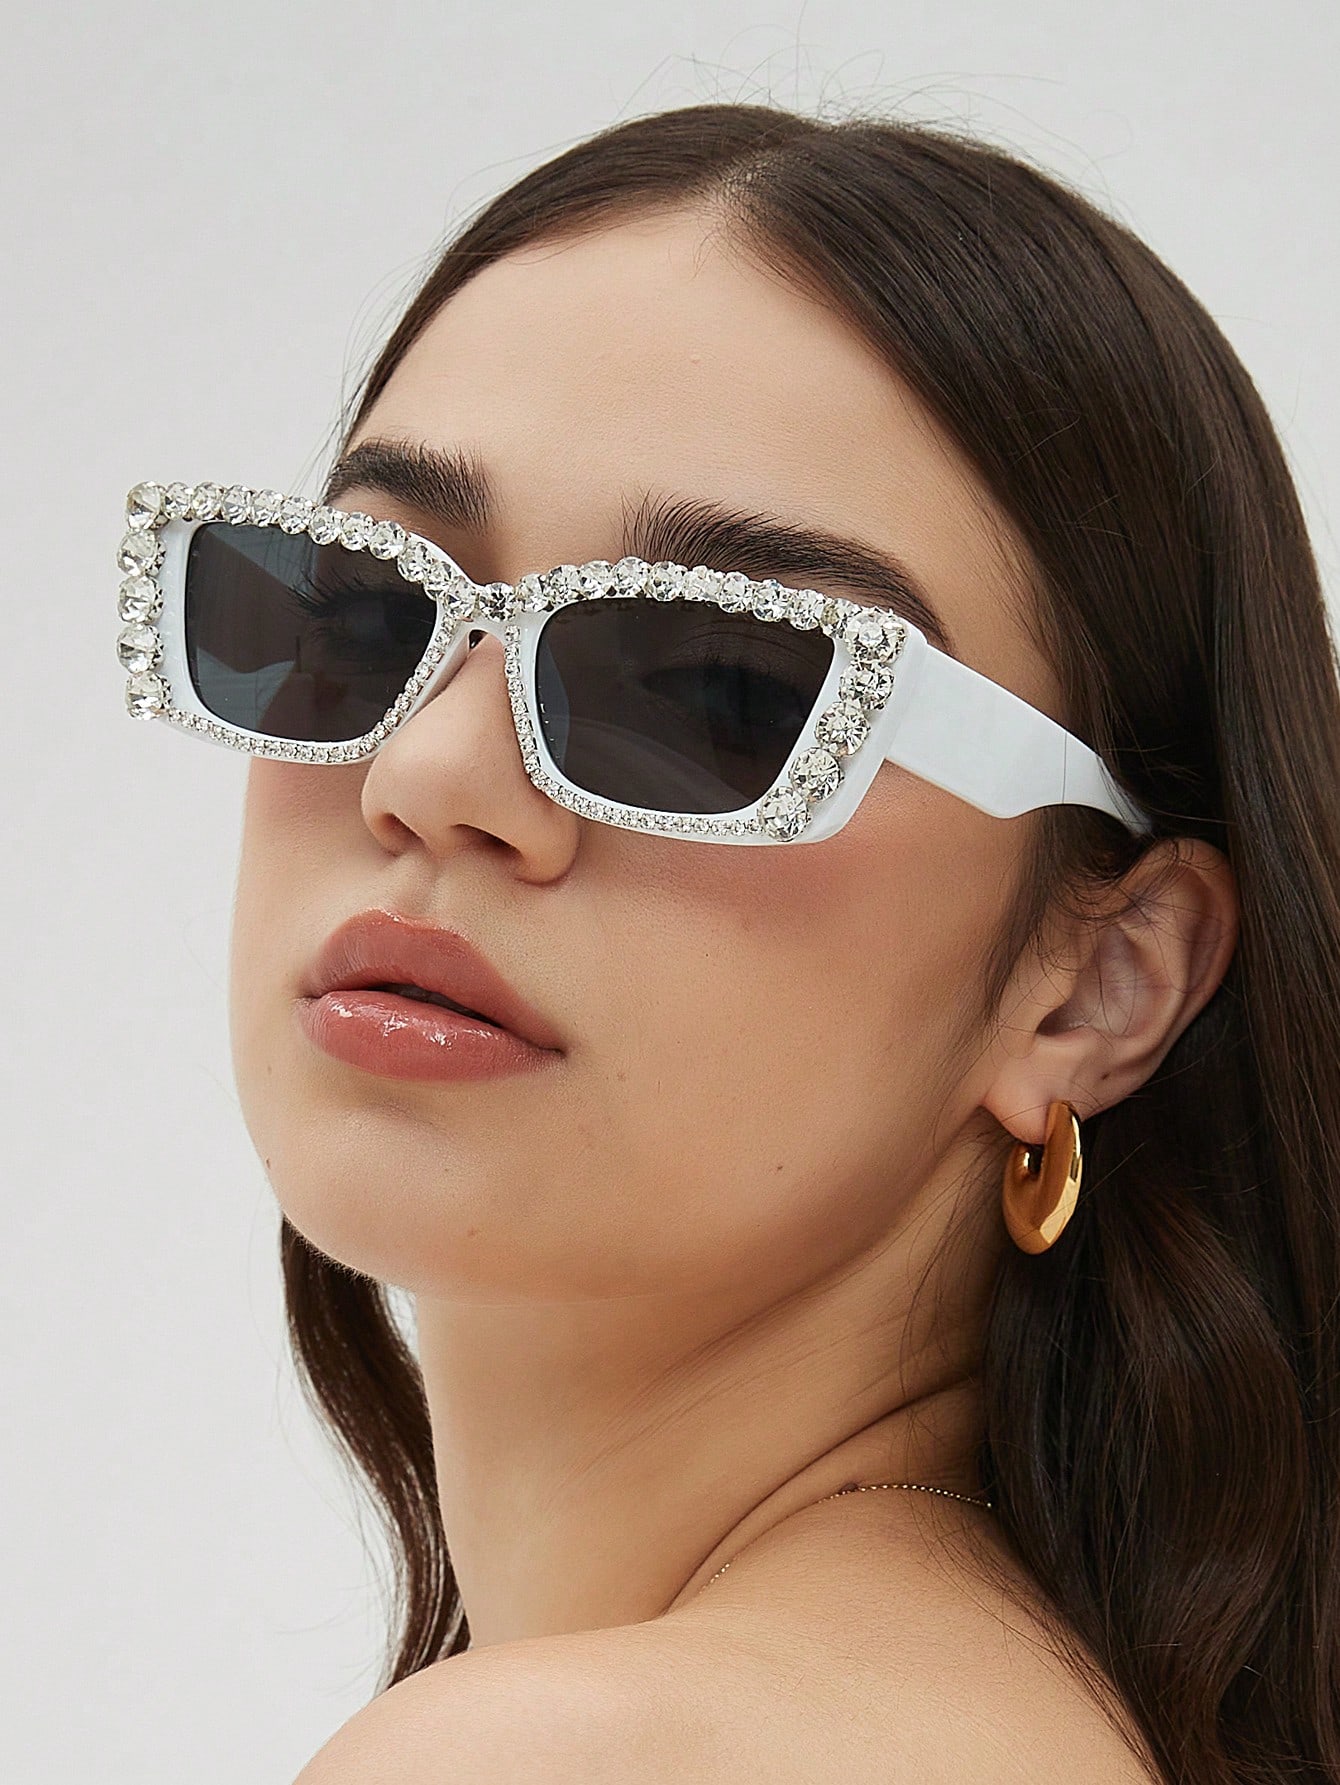 цена 1 шт. модные женские солнцезащитные очки в крупной оправе со стразами